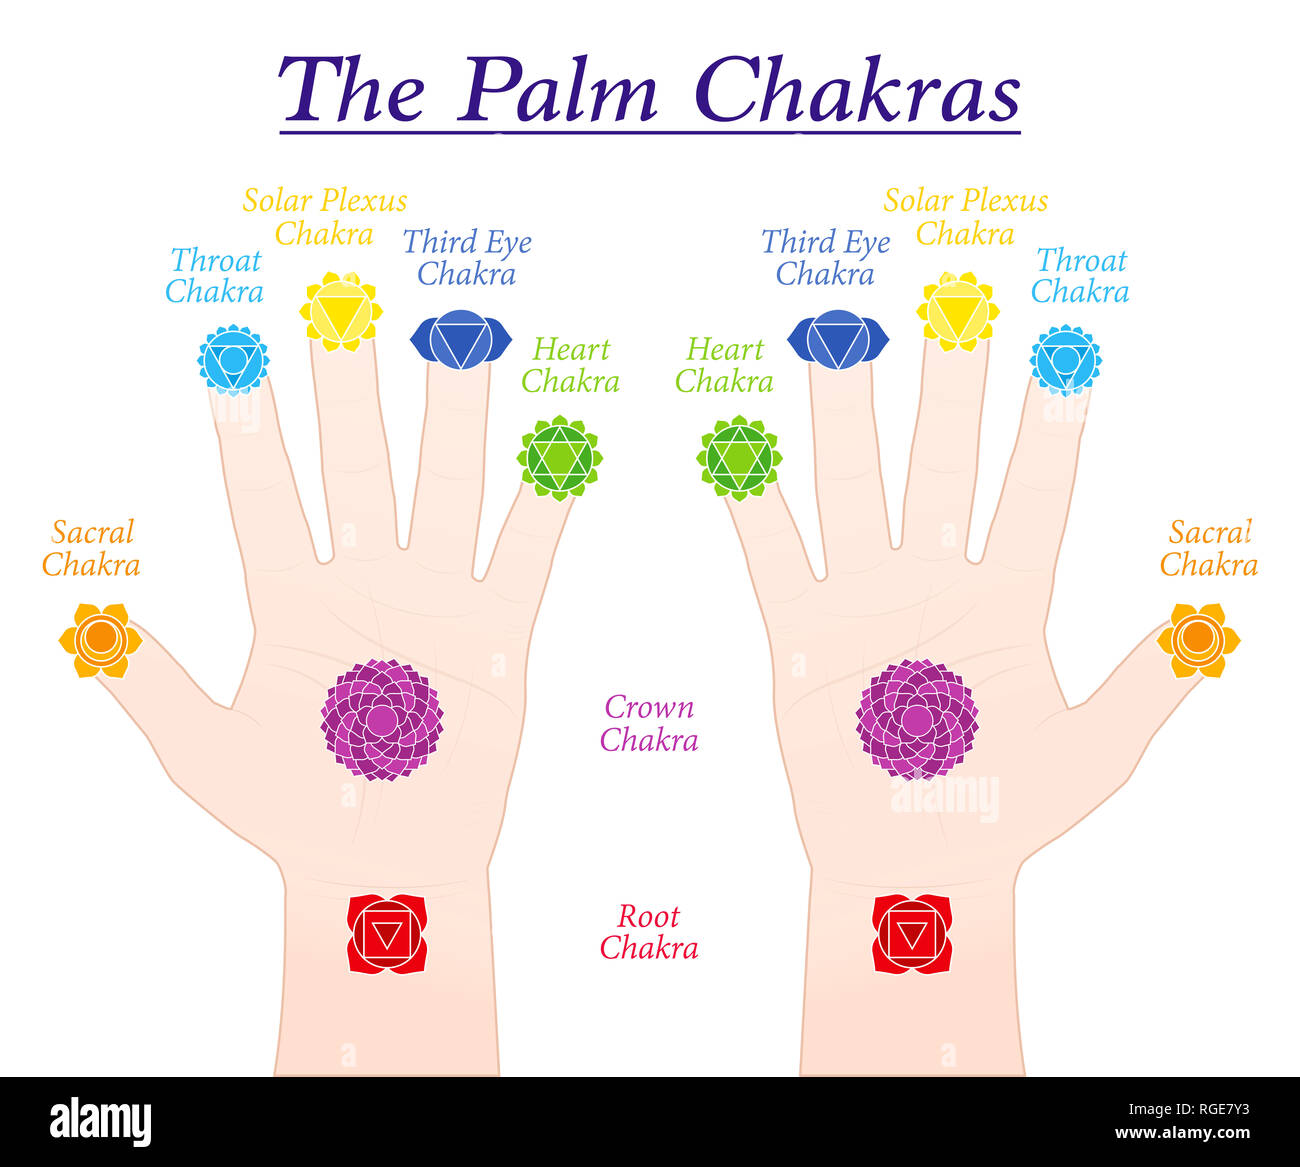 Chakras Palm. Les symboles et les noms des principaux chakras chez les parties correspondantes des deux mains - illustration sur fond blanc. Banque D'Images